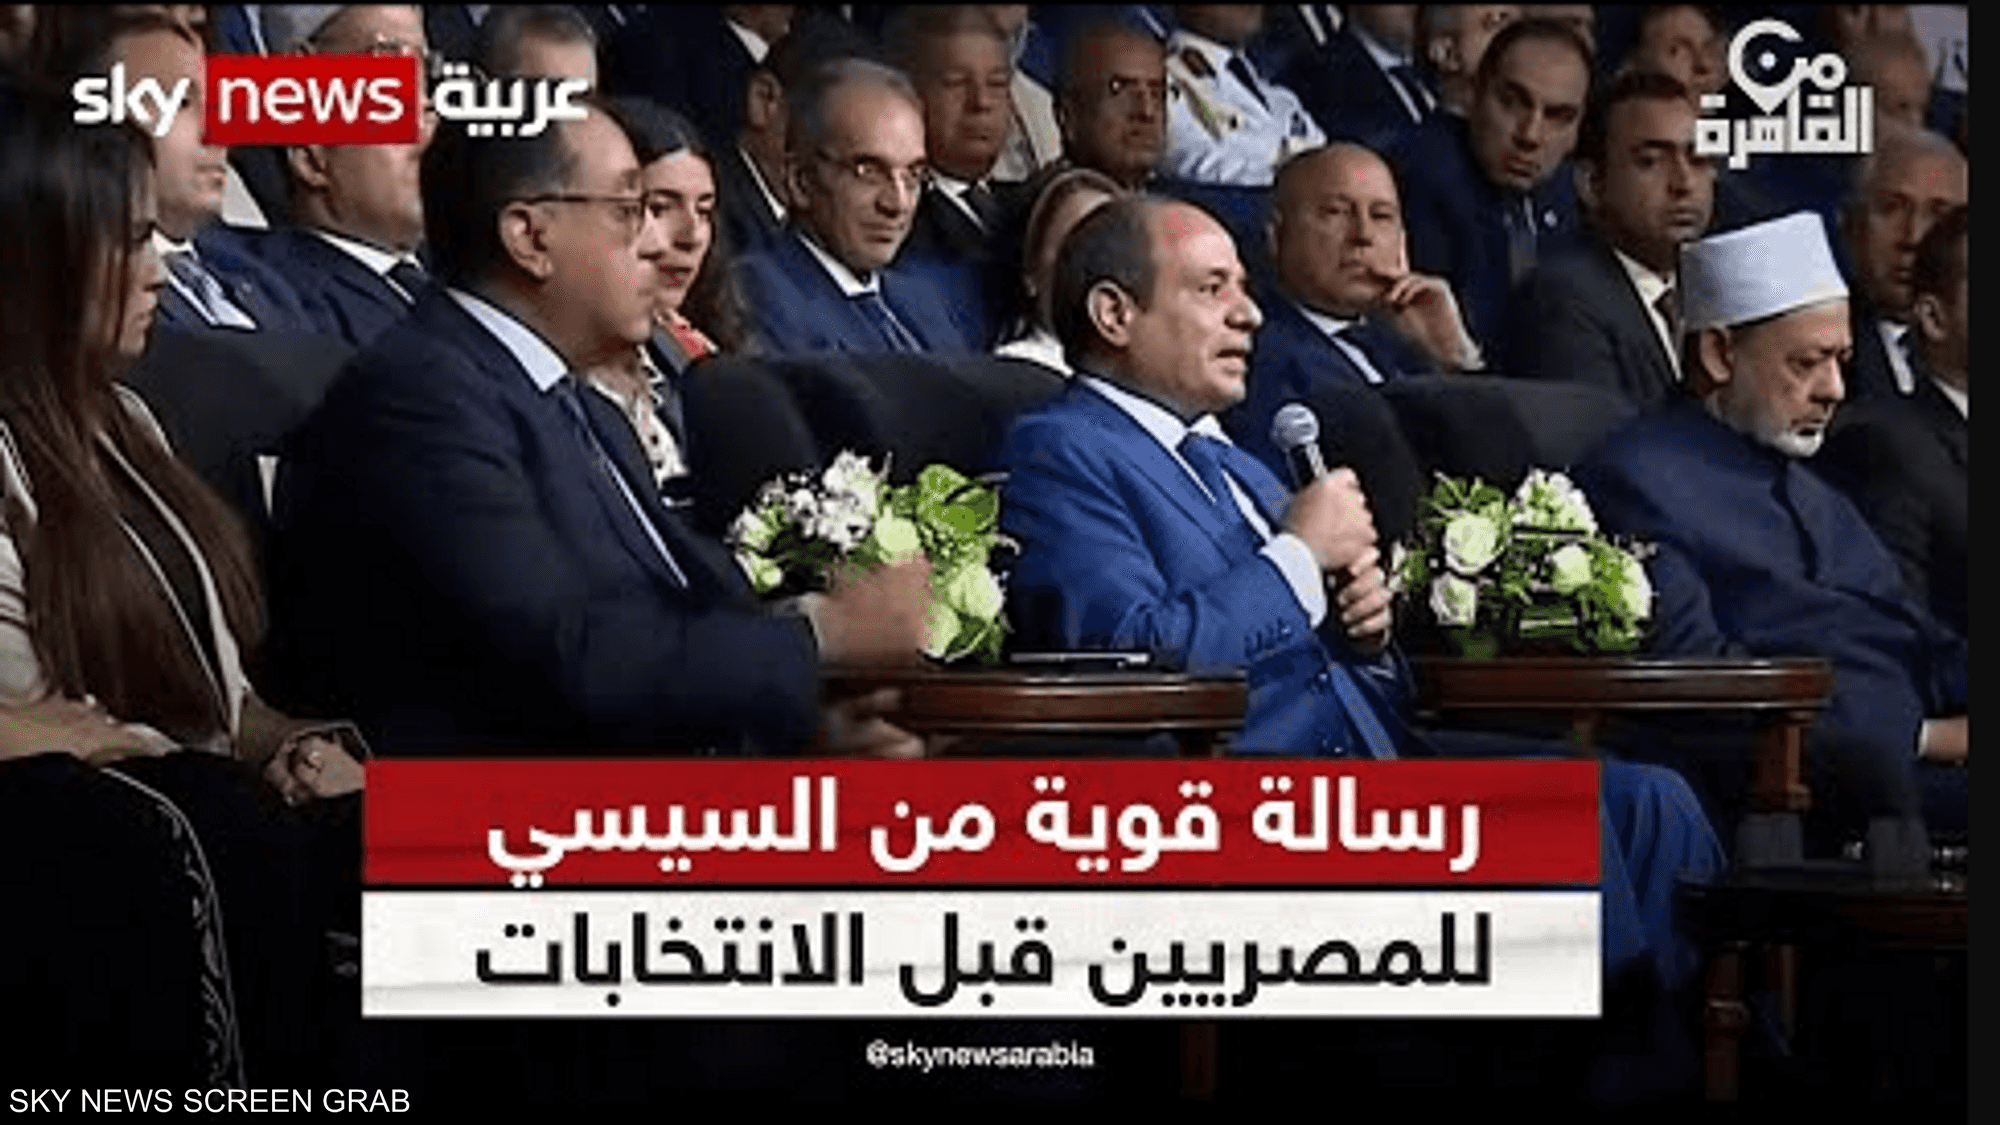 رسالة قوية من السيسي للمصريين قبل الانتخابات الرئاسية